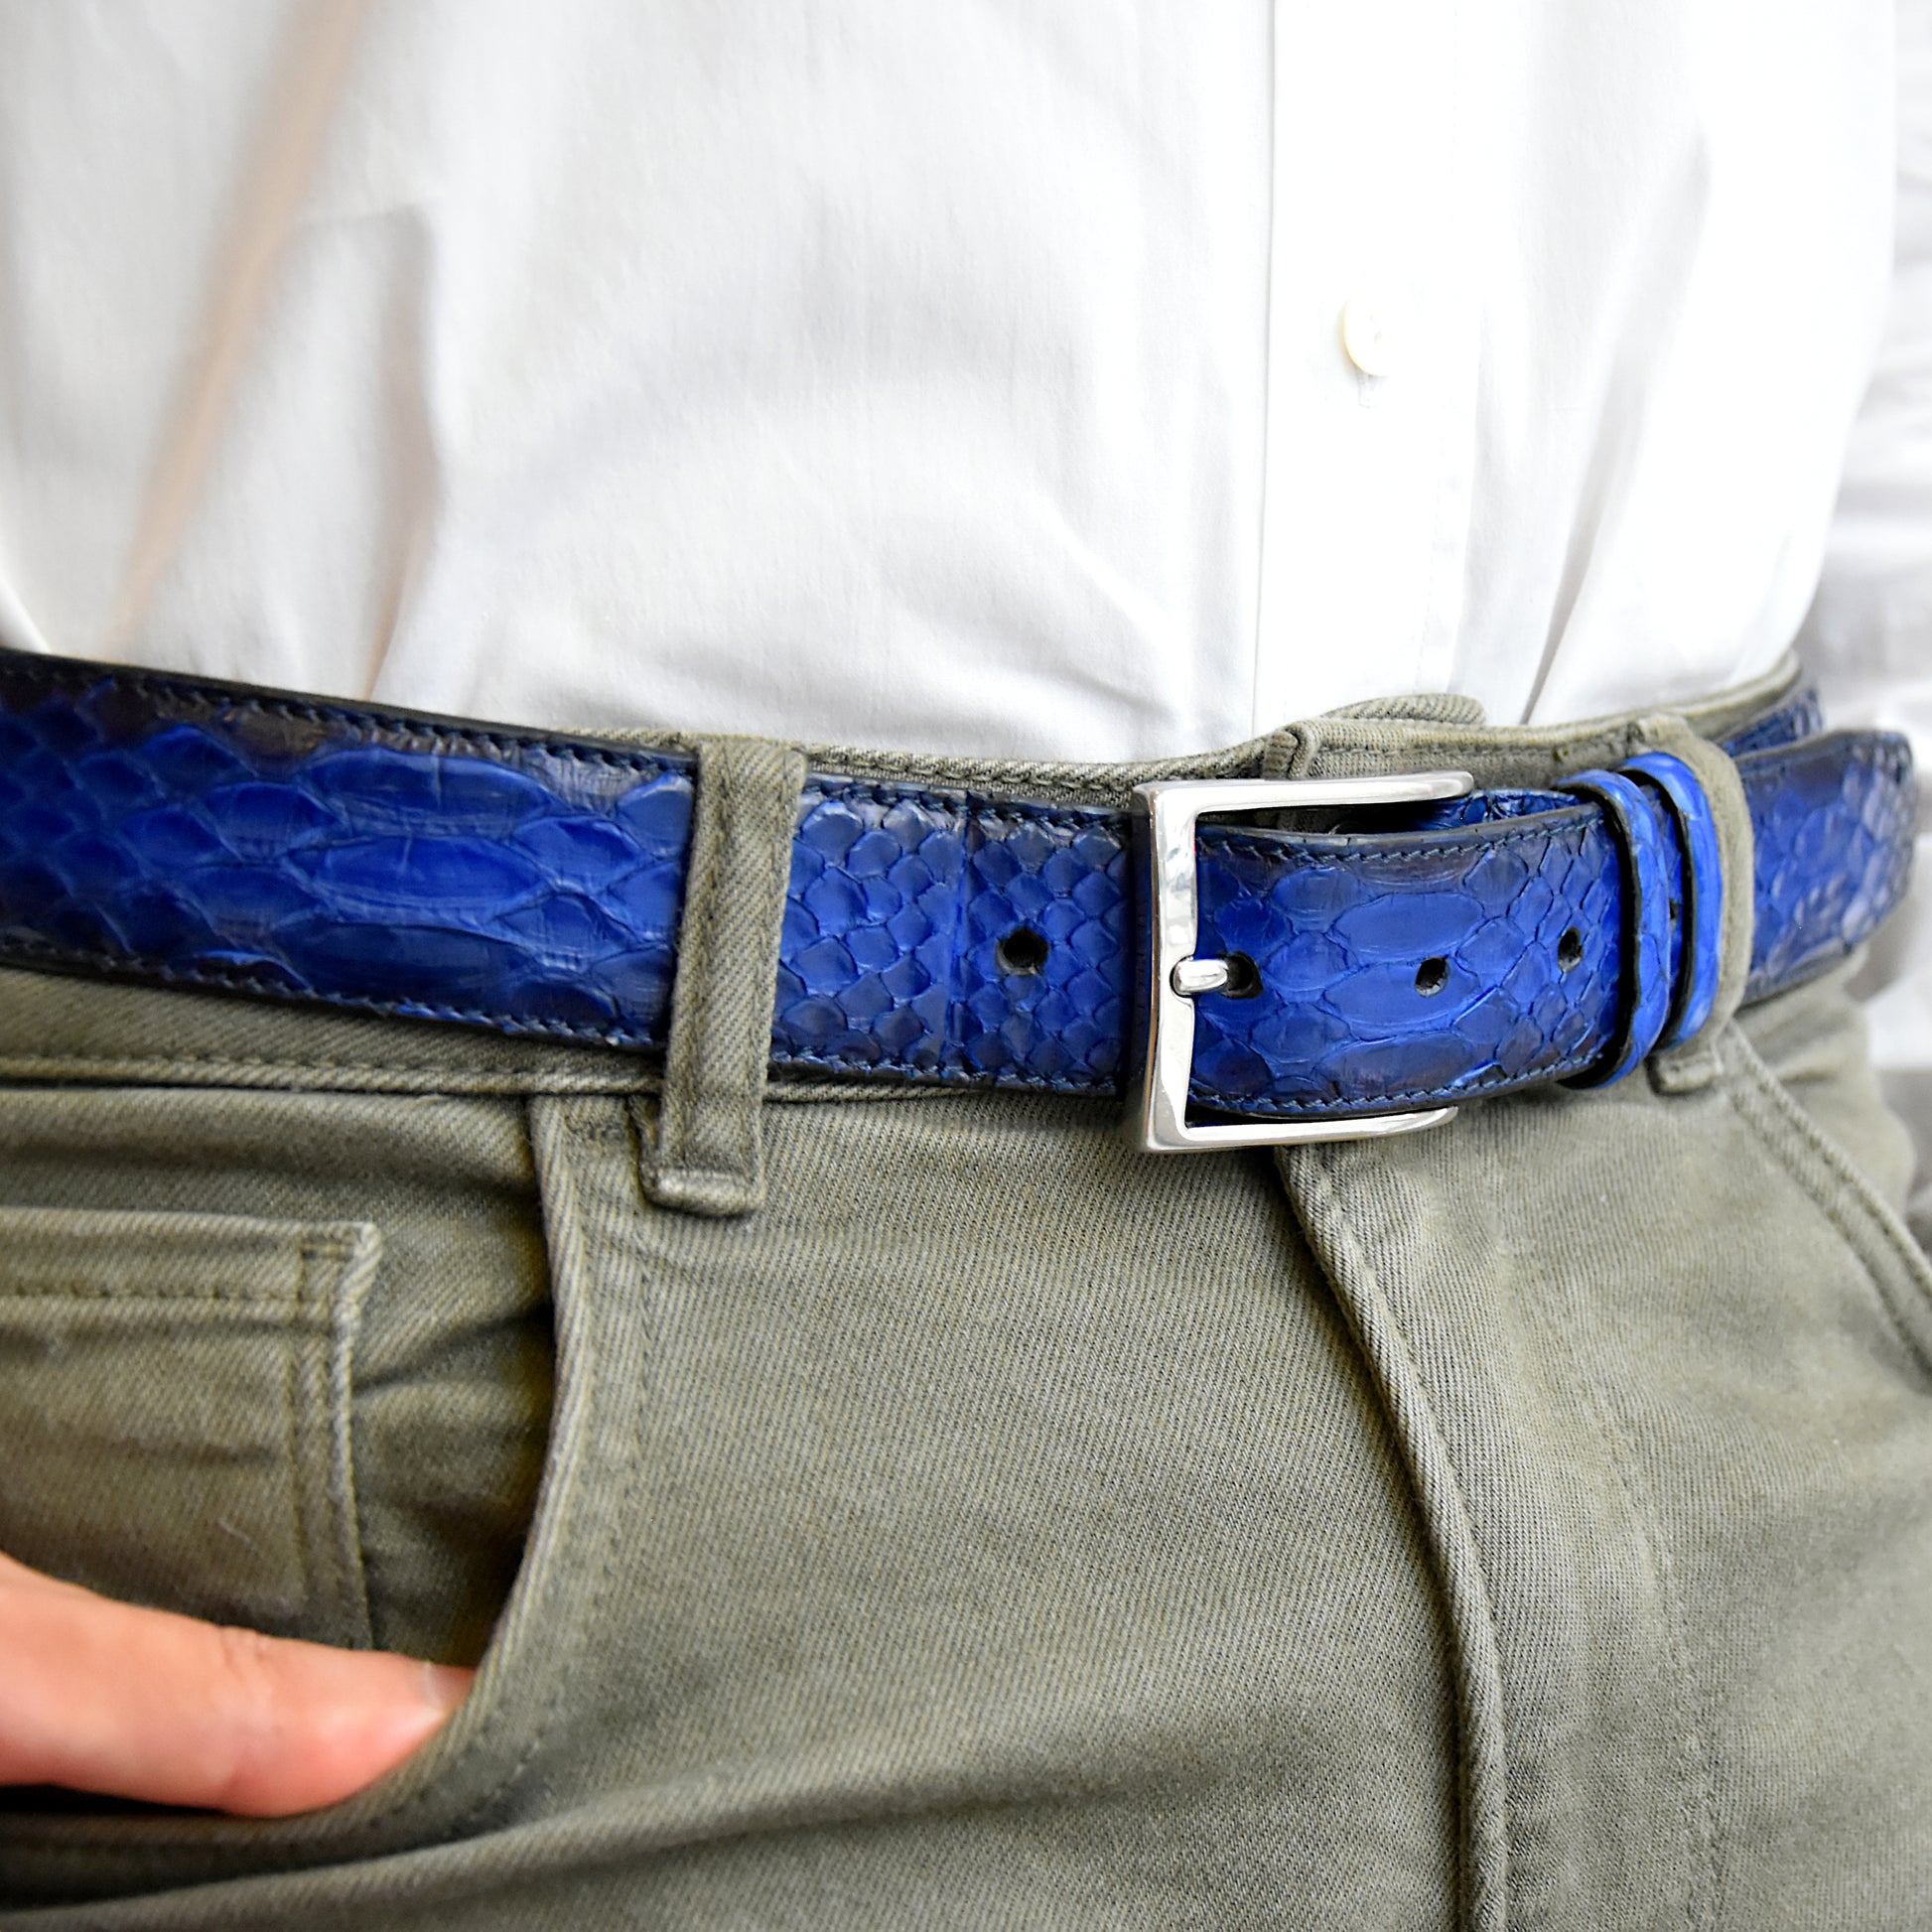 Cintura Uomo in pelle di Pitone Blu colorato a mano Personalizzabile - MESPECTA Italia